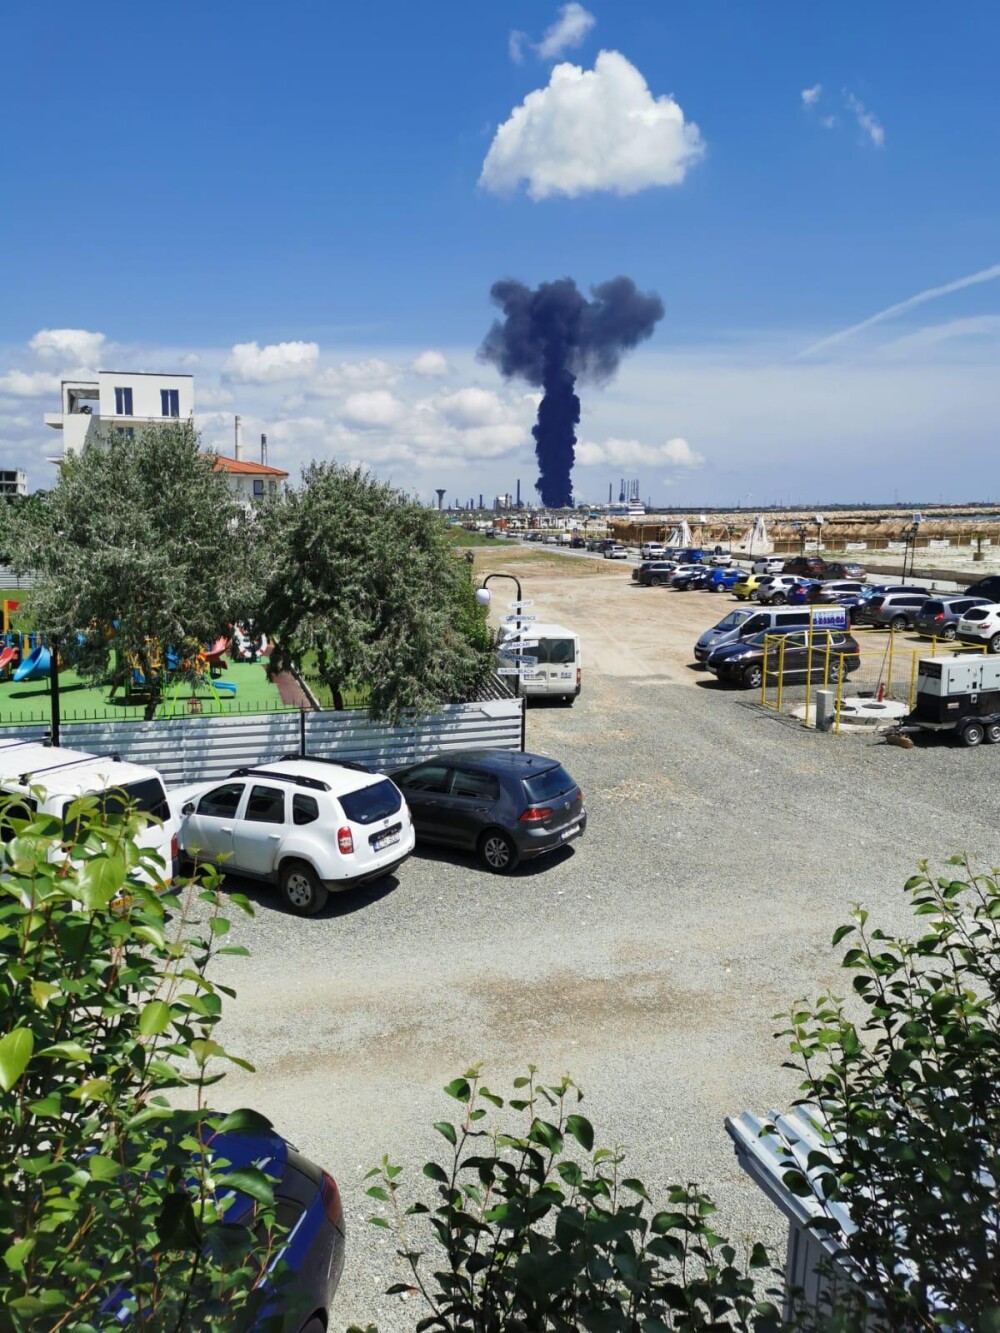 ISU Constanța: „Explozia de la Petromidia s-ar fi produs la o instalație de gaz de la rafinărie” - Imaginea 3